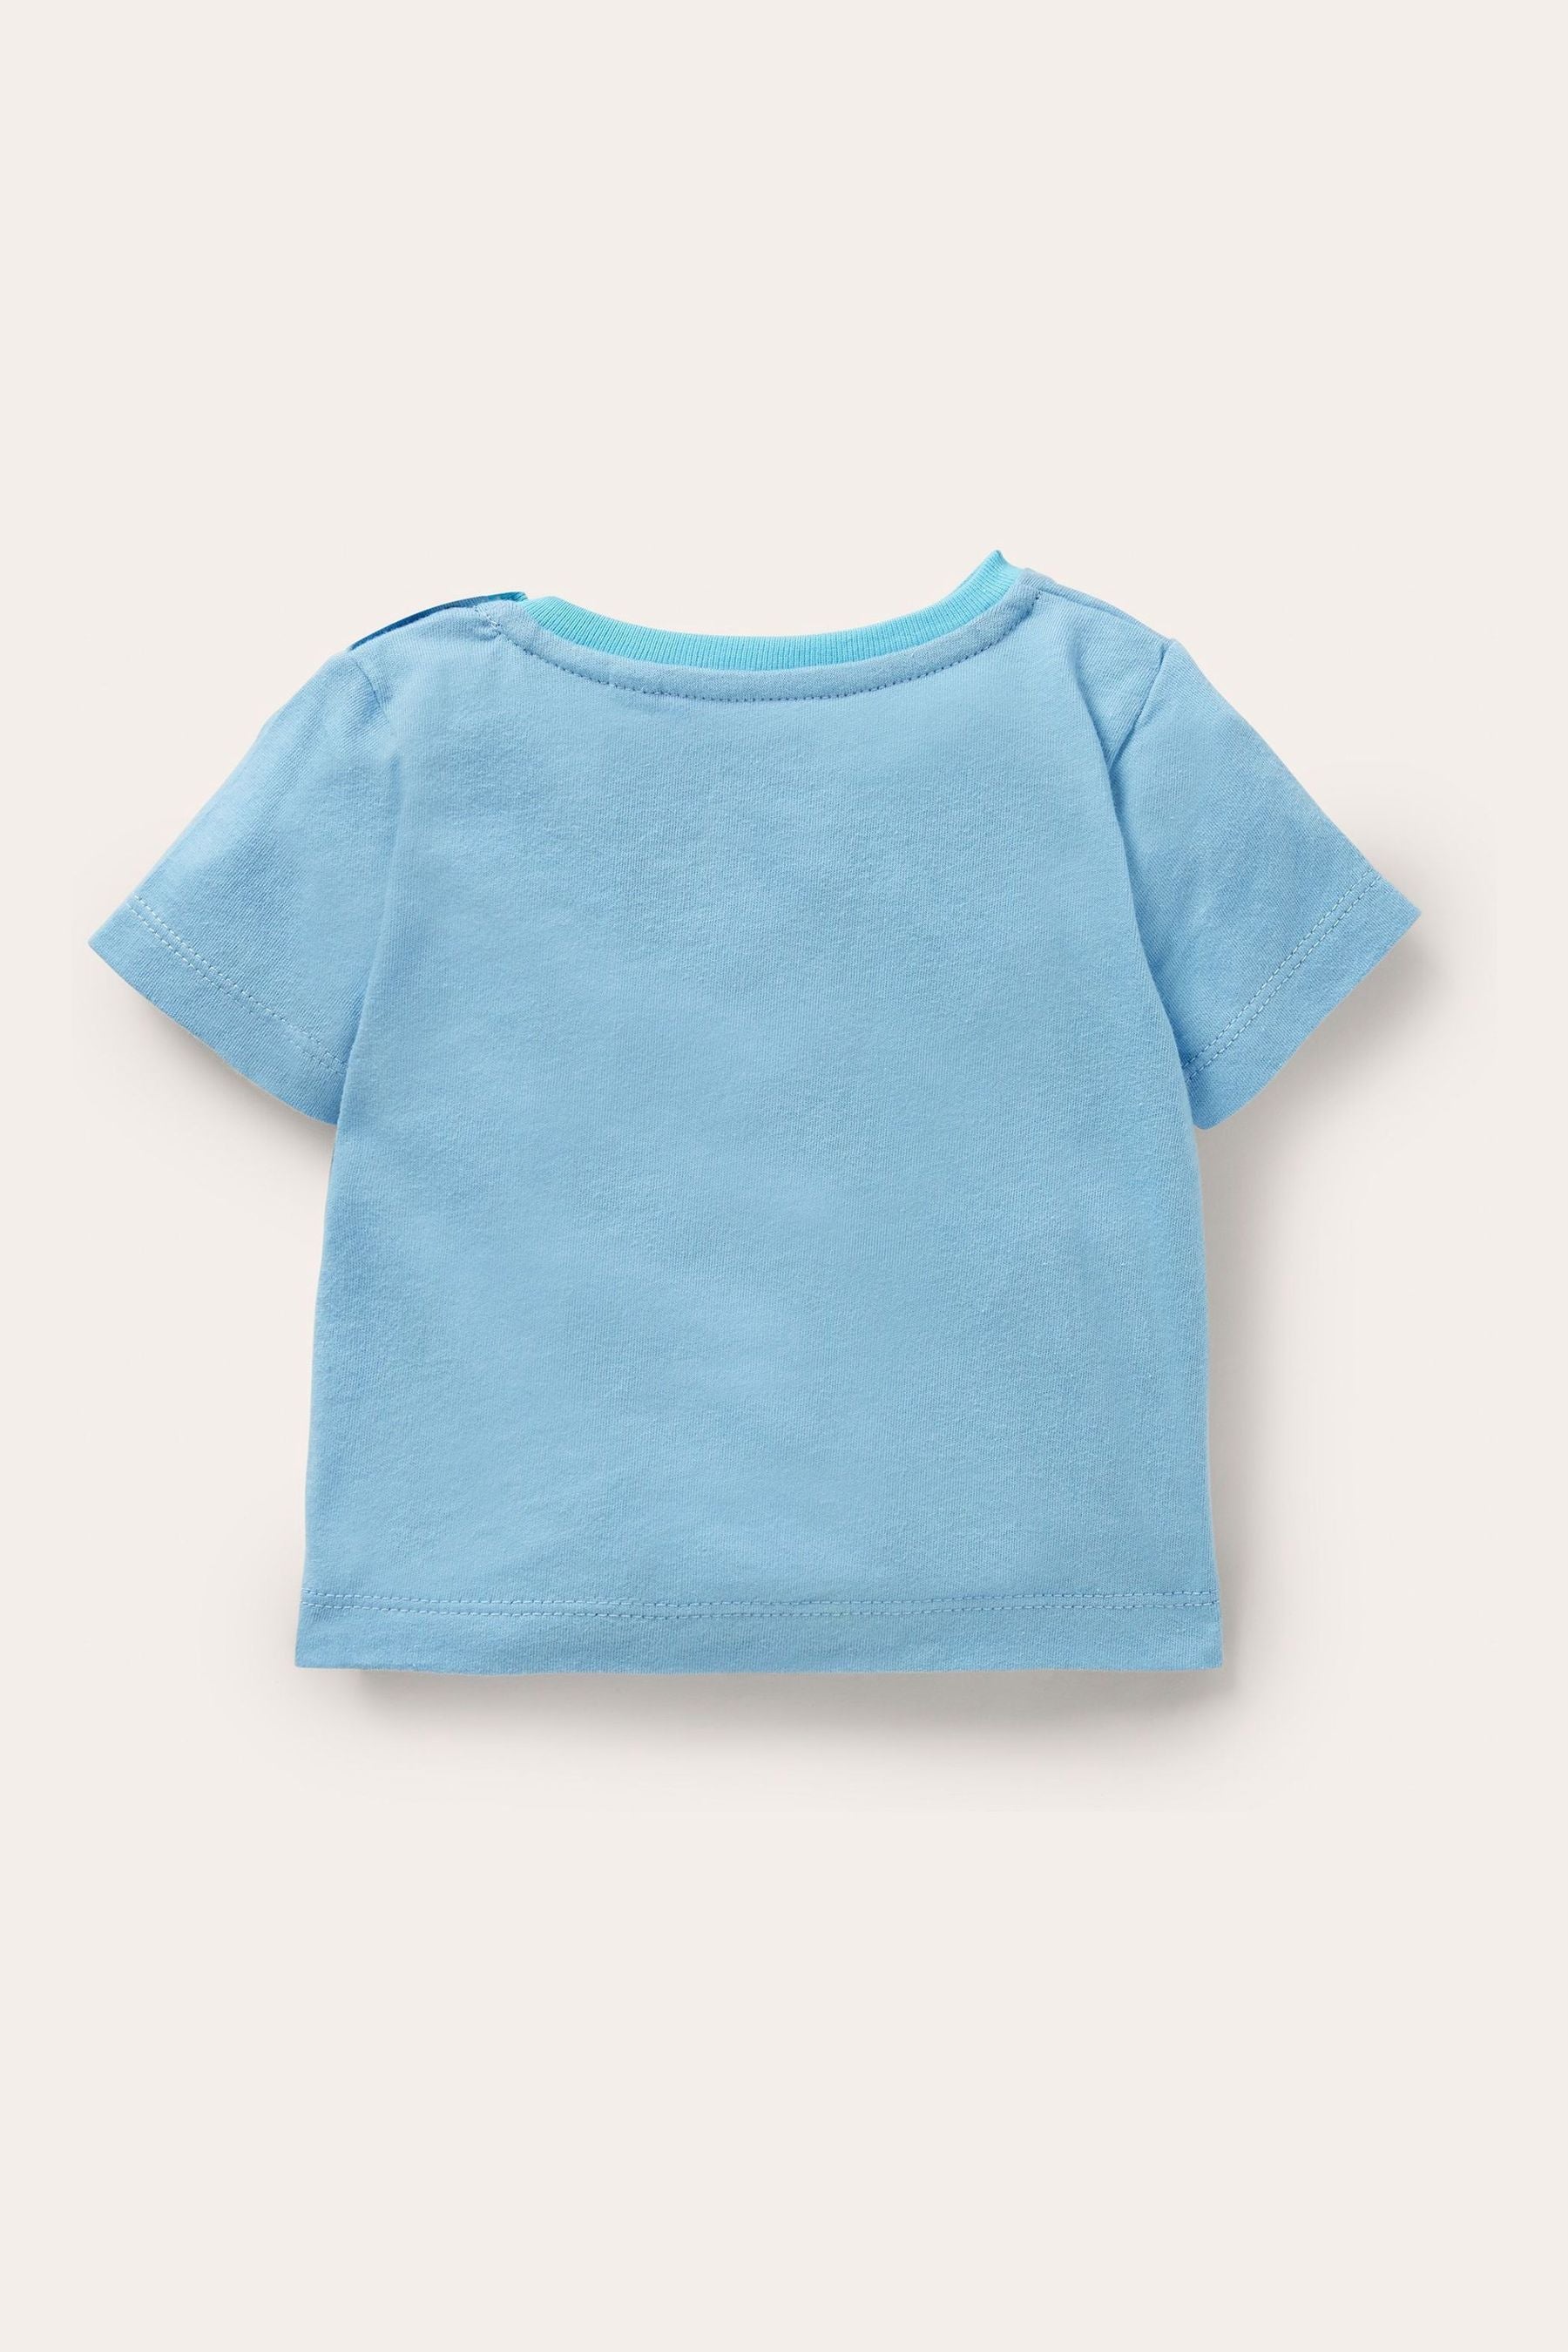 Boden Blue Lift-the-flap Jersey T-Shirt